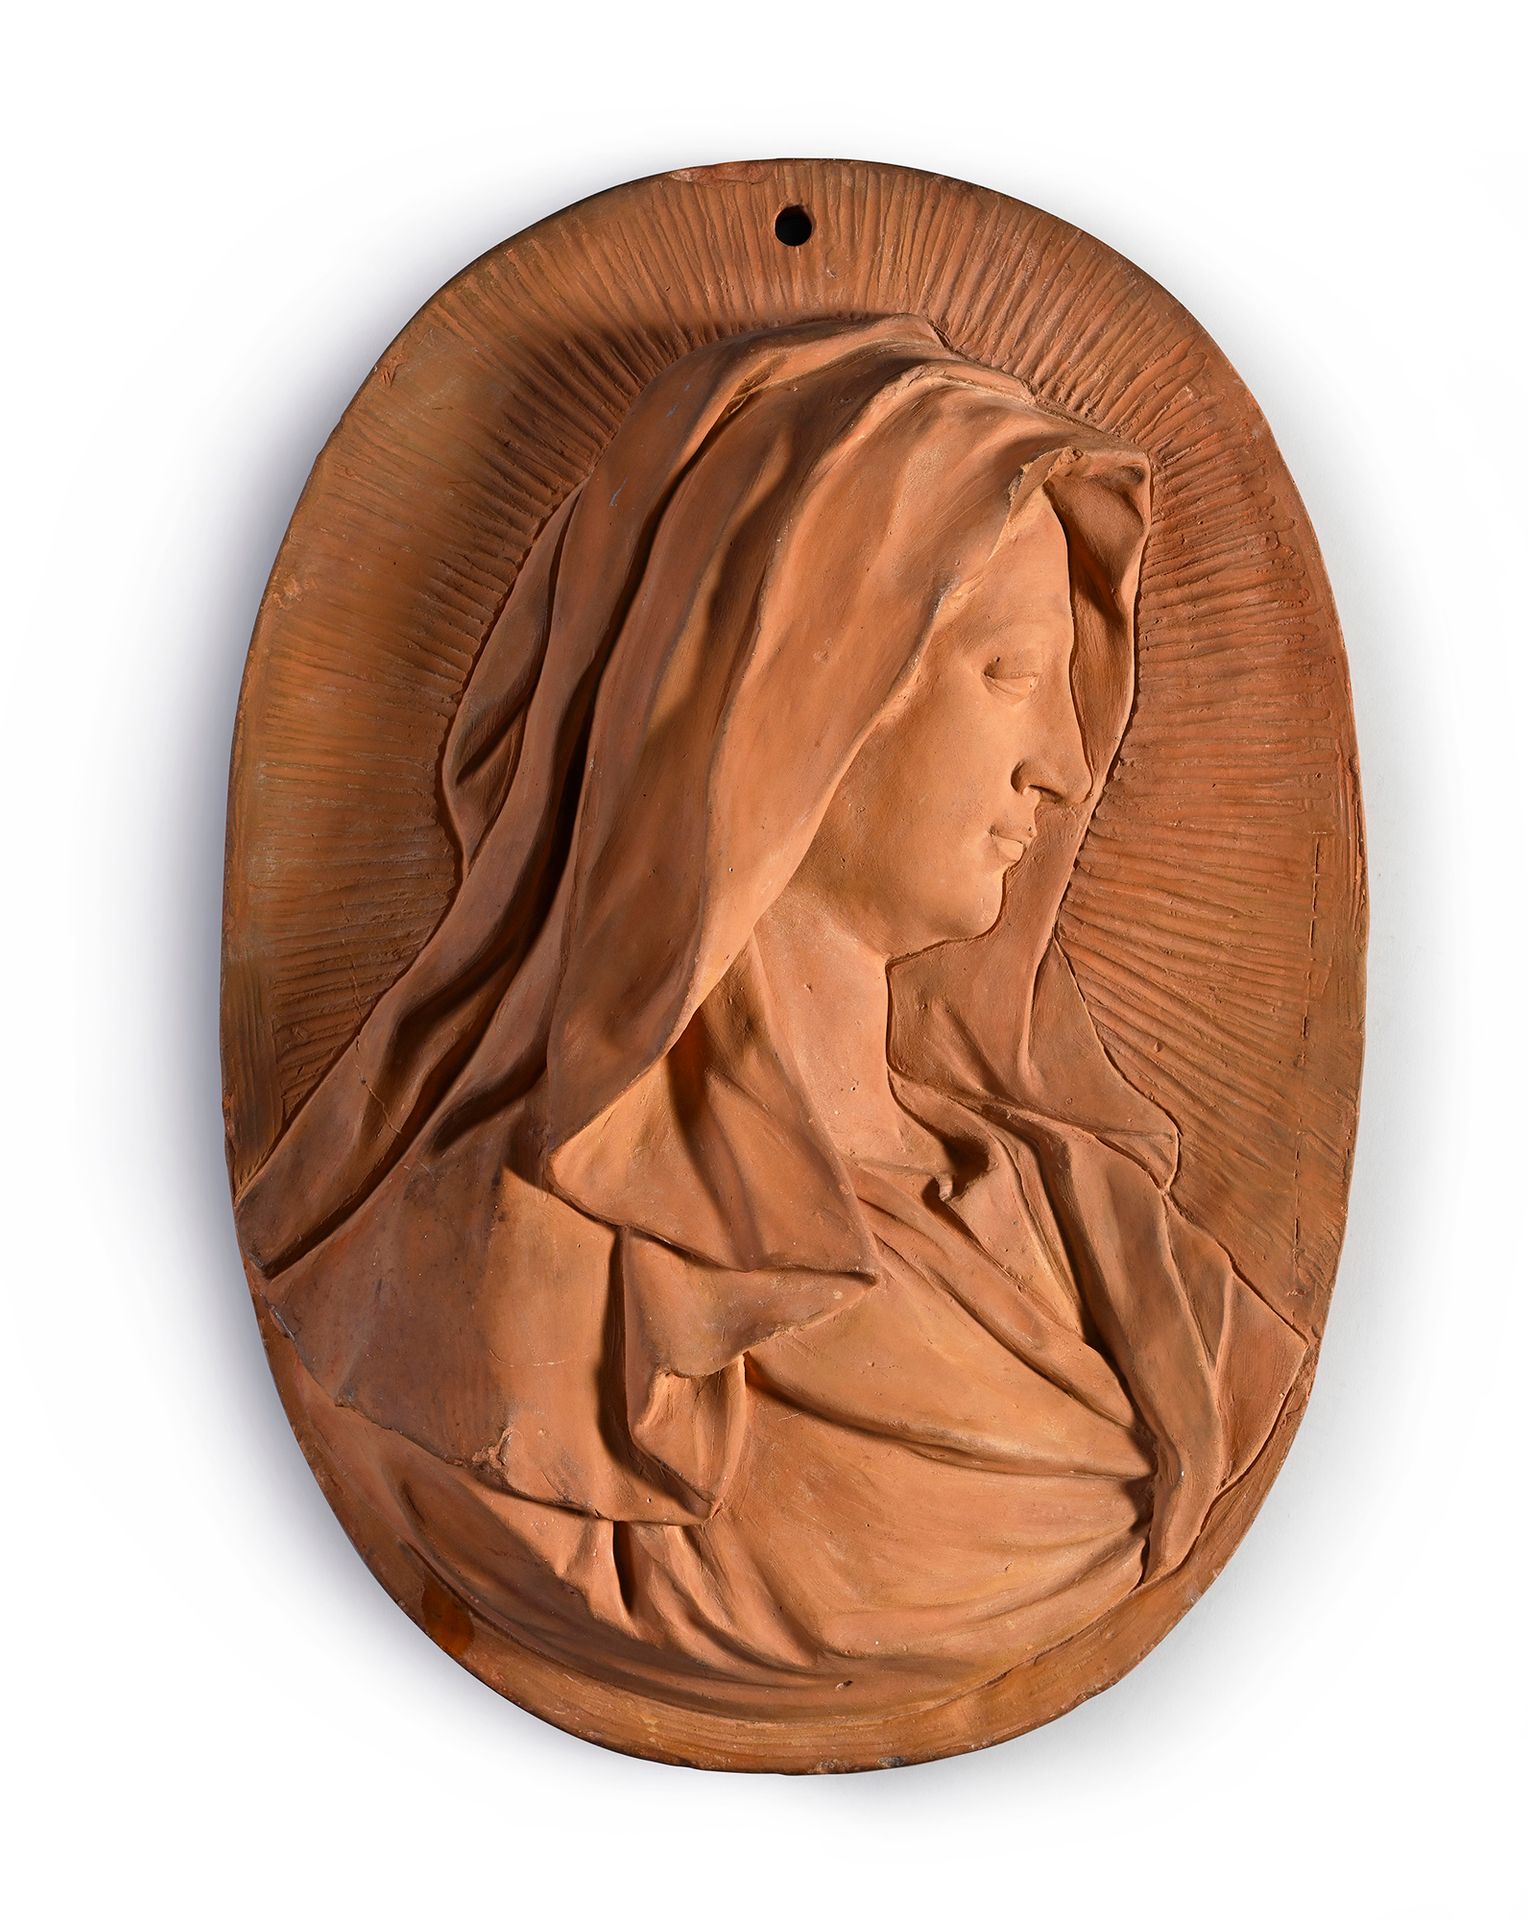 Null 高浮雕的椭圆形赤土勋章，描绘了圣母的轮廓，背面刻有1760年。
佛兰德斯，18世纪，1760年
H.56厘米 - 宽40厘米